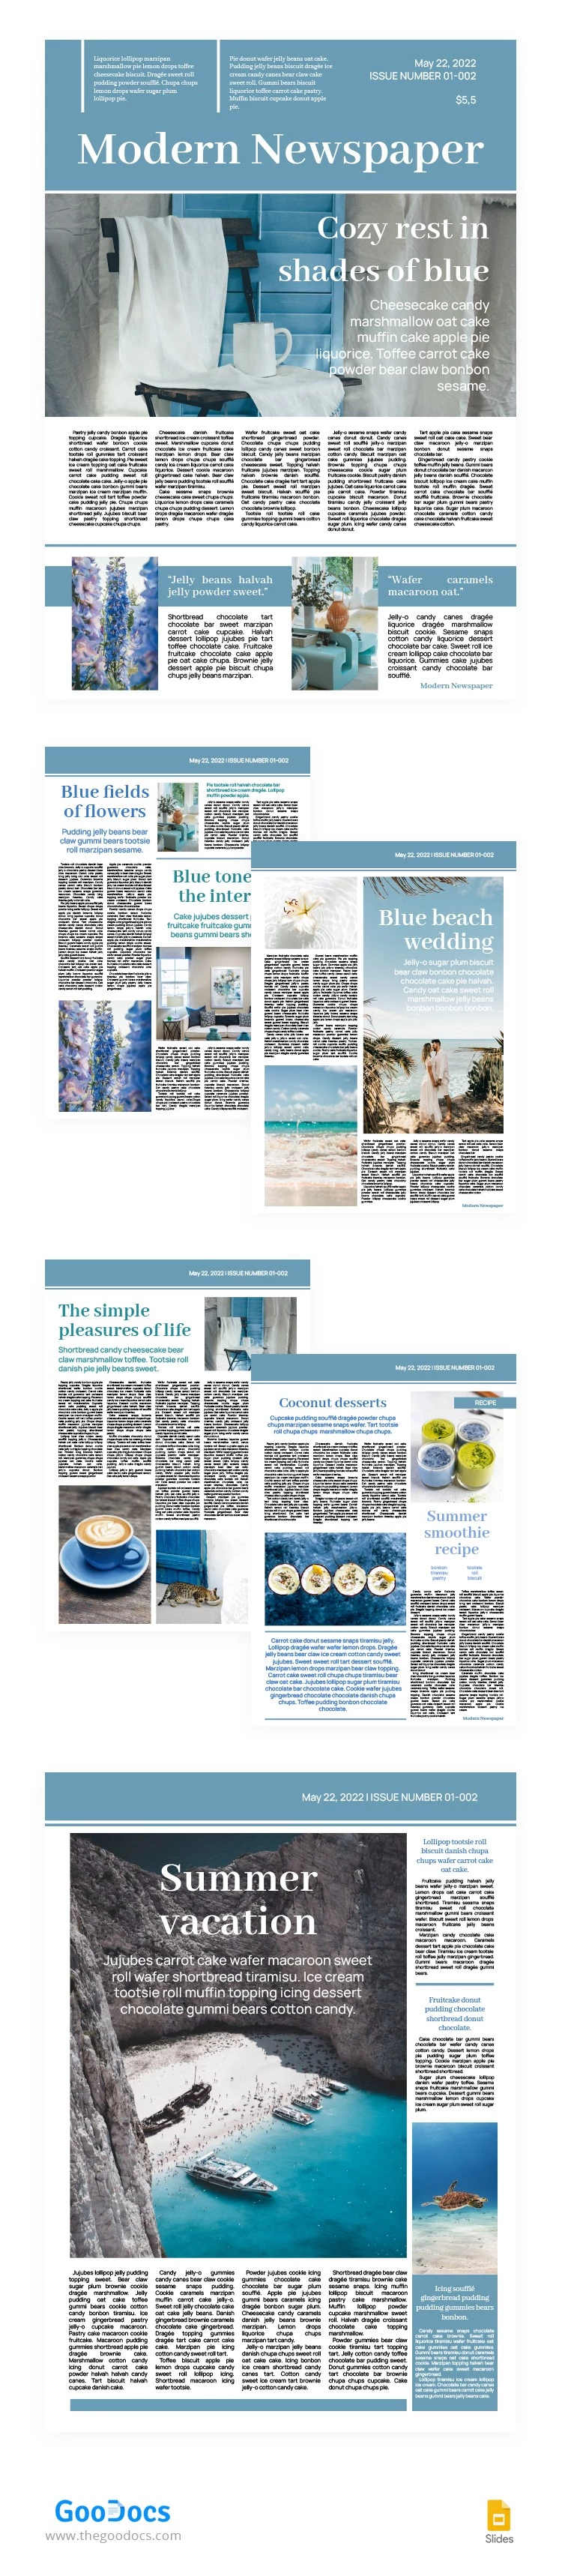 Jornal Moderno em Tons de Azul - free Google Docs Template - 10063755